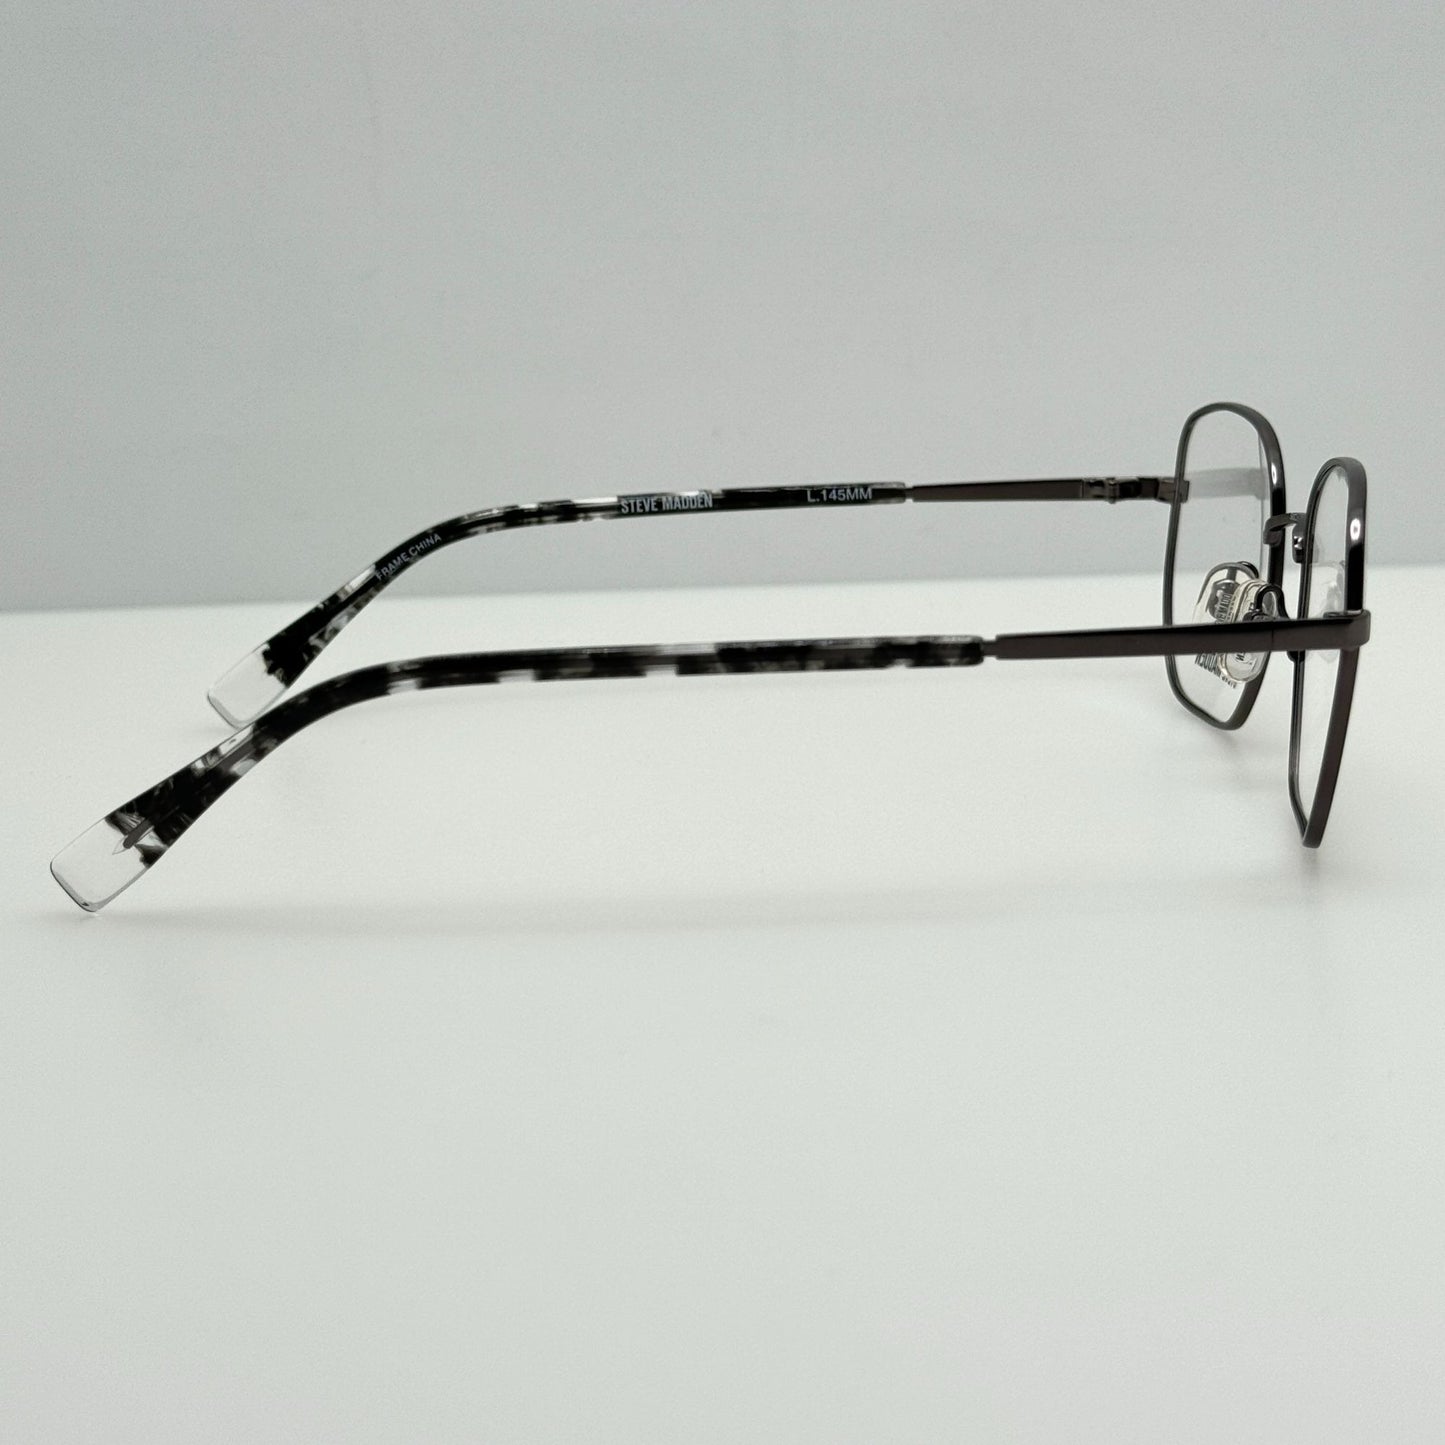 Steve Madden Eyeglasses Eye Glasses Frames Faze Gunmetal 50-17-145